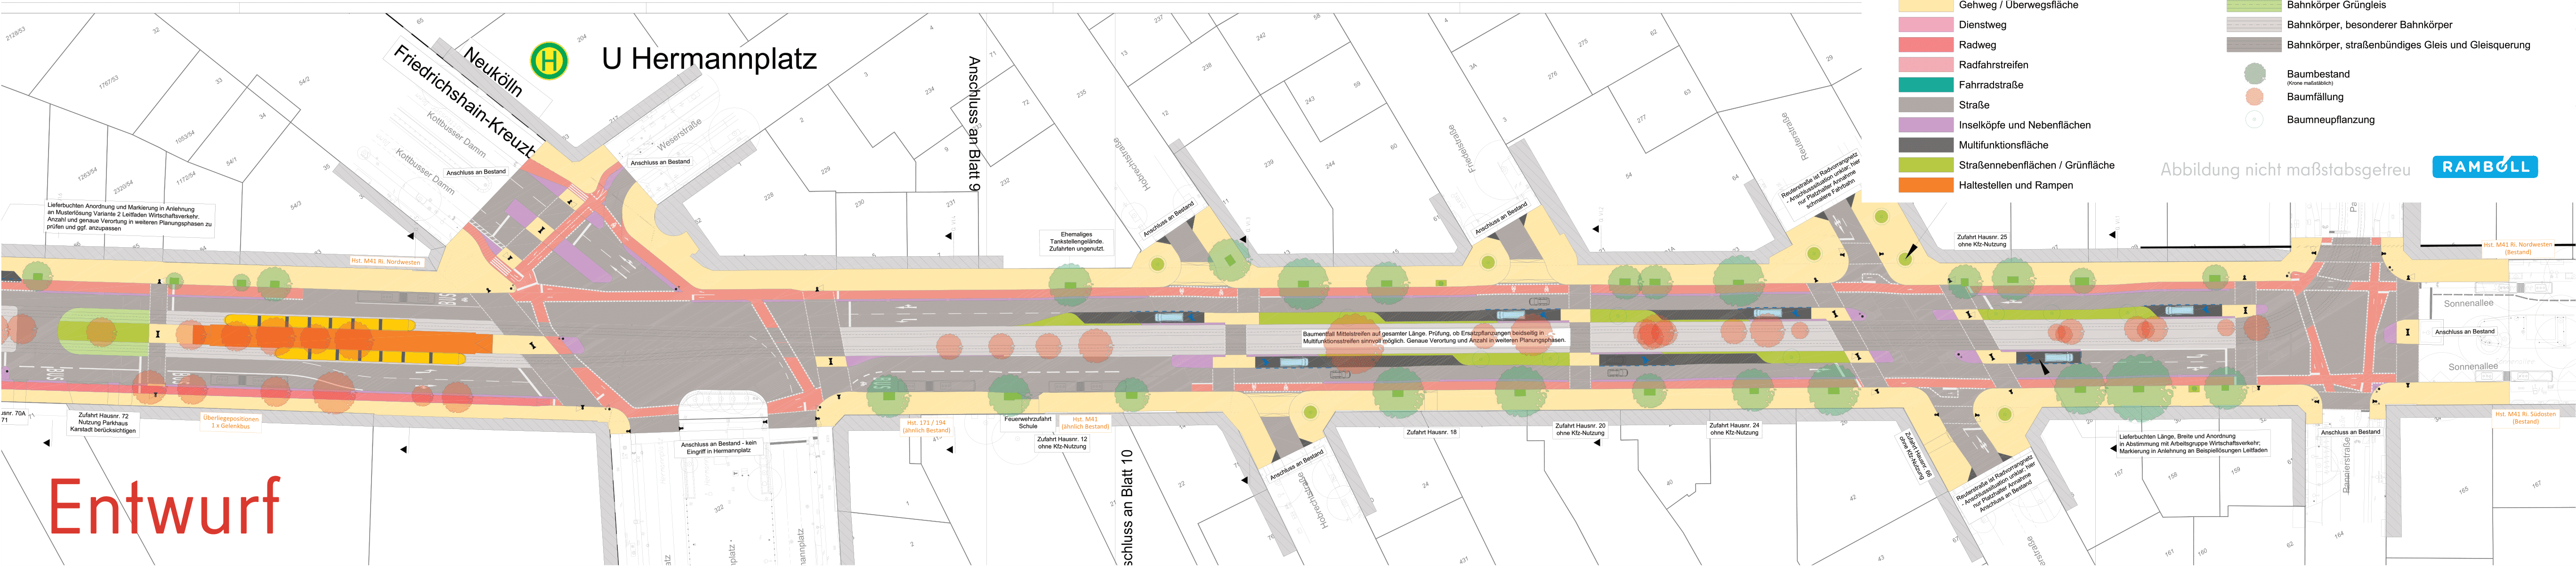 Diese Abbildung zeigt eine technische Zeichnung des Bauabschnitts Sonnenallee und Urbanstrasse